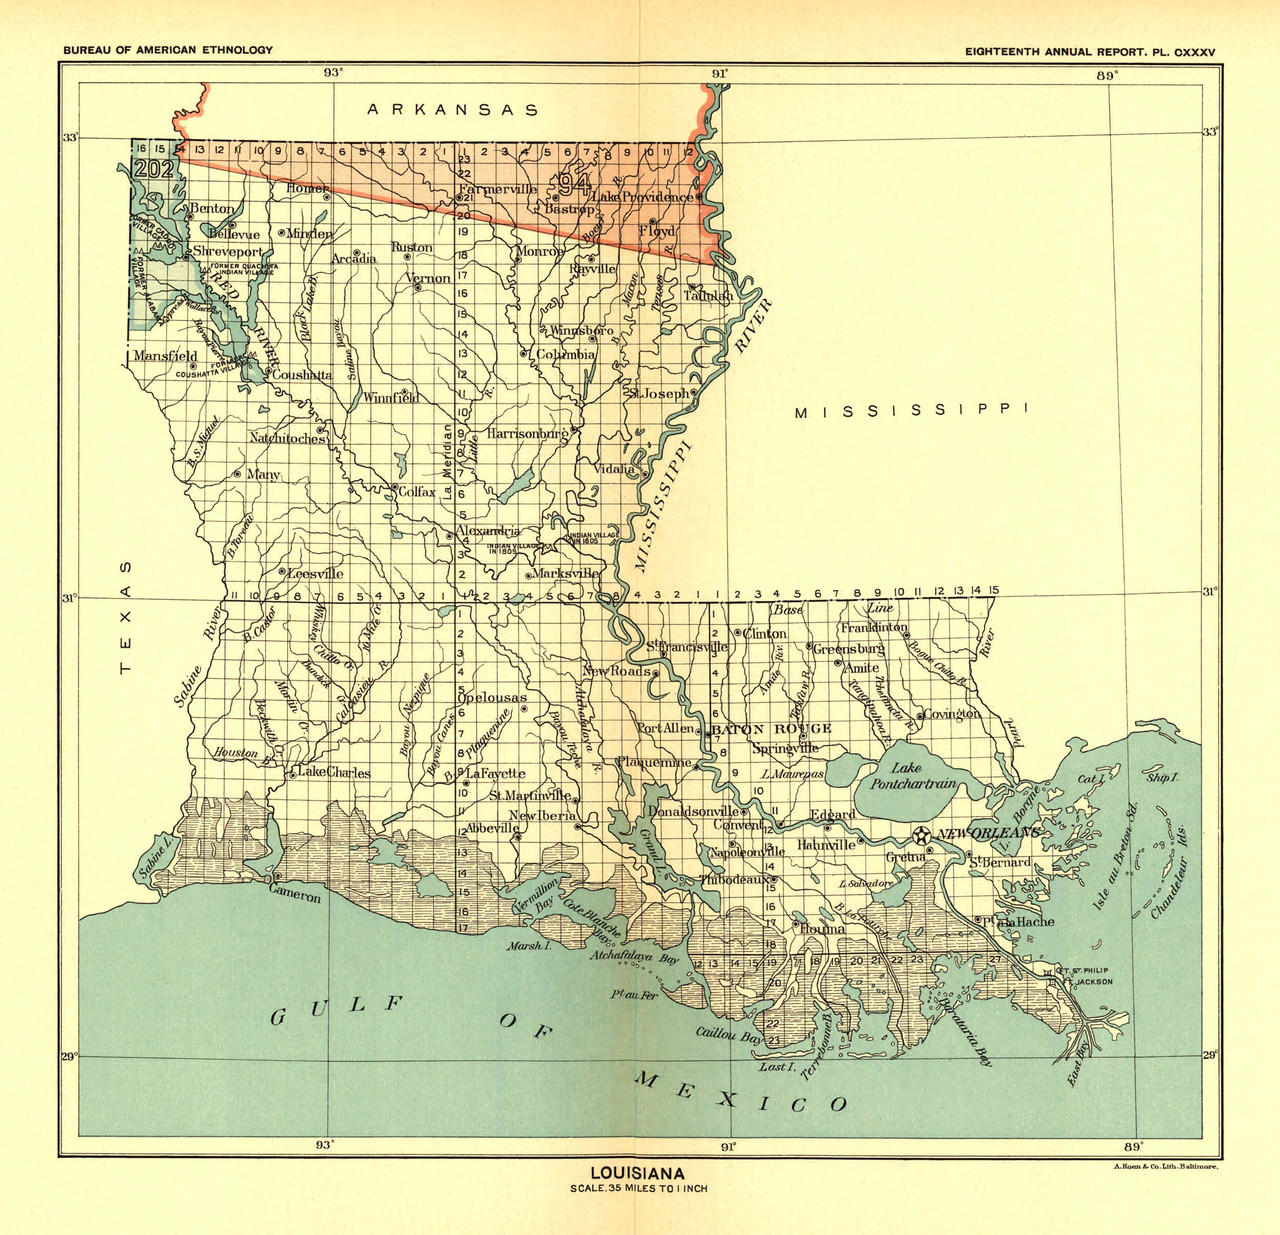 Louisiana Mississippi Arkanasas New Orleans Little Rock Jackson 1885  Tunison map: (1885) Map